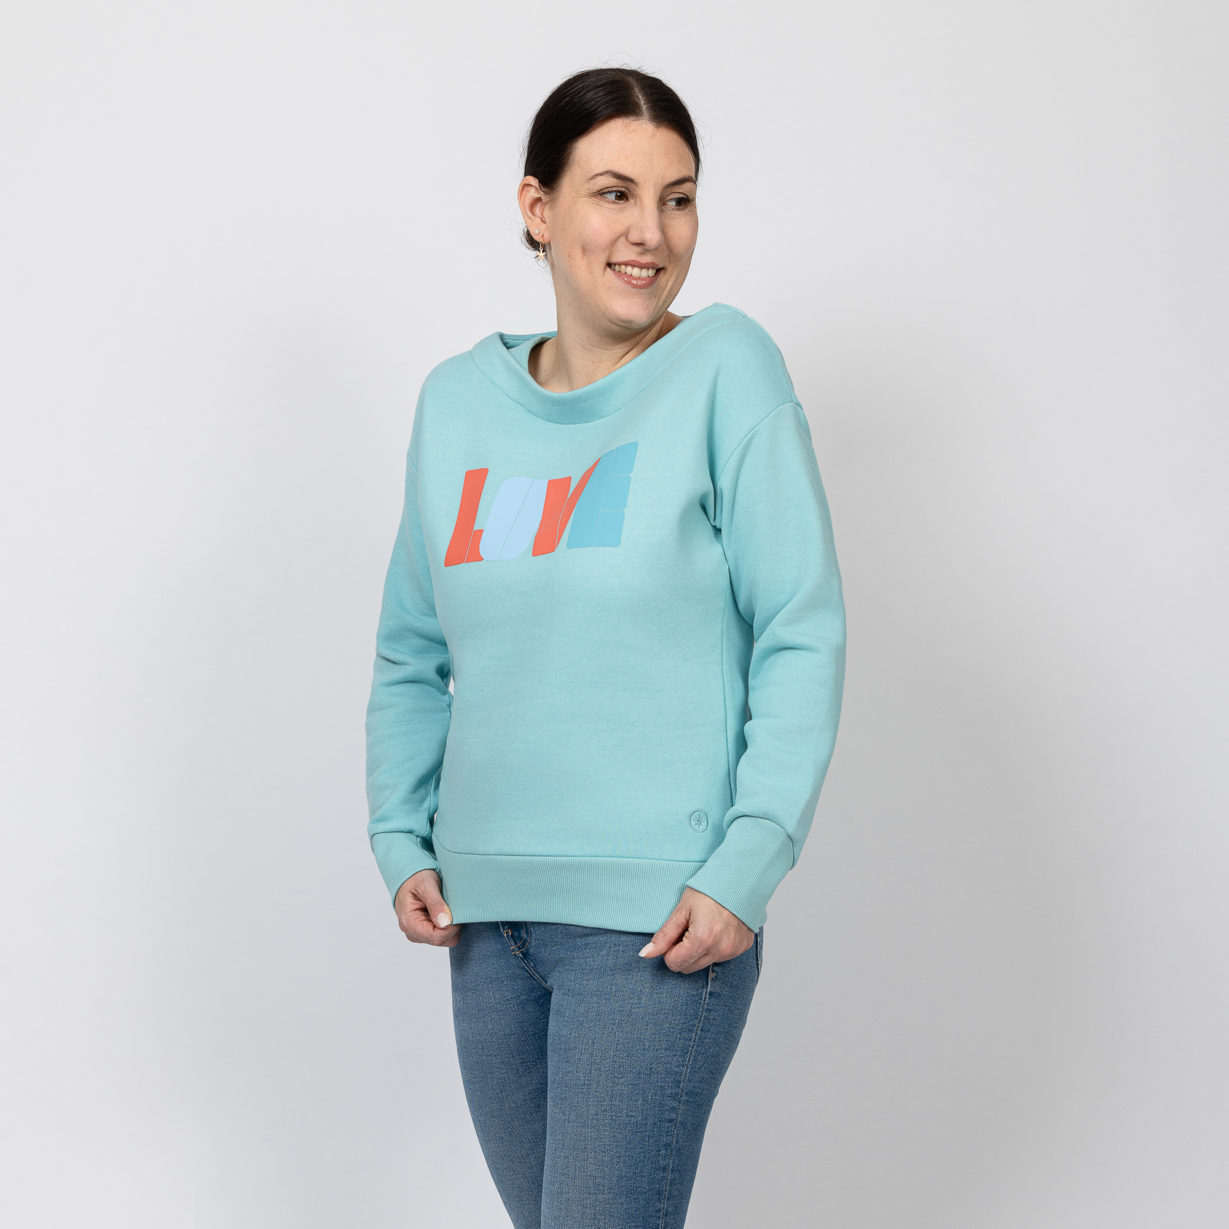 Kulóóntje - Sweatshirt mit Boatneckkragen und LOVE Print Aqua Seite Model